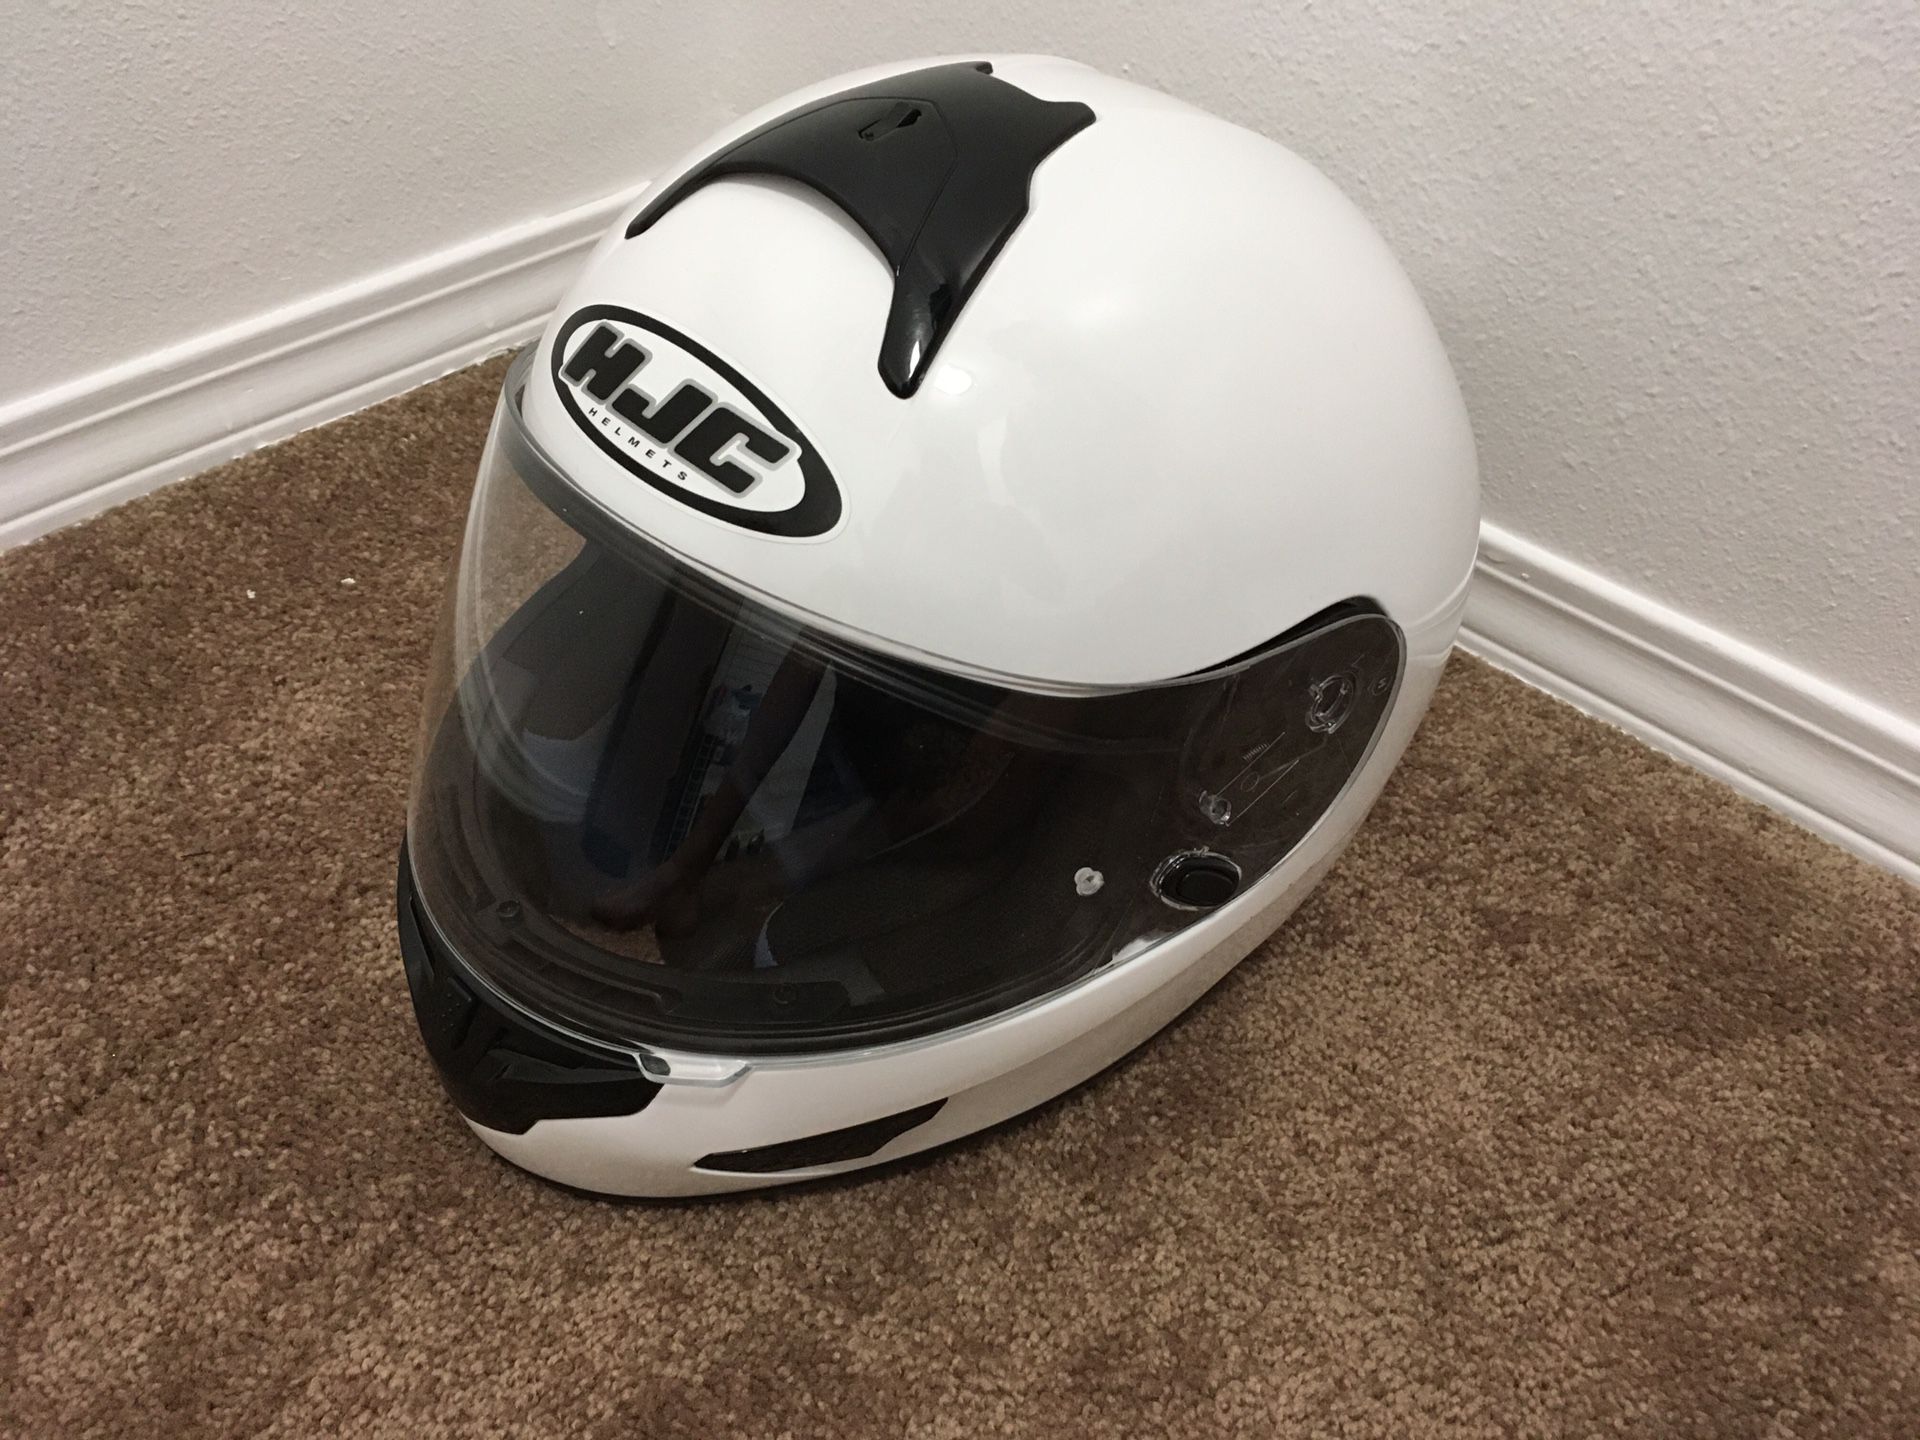 HJC motorcycle bike helmet